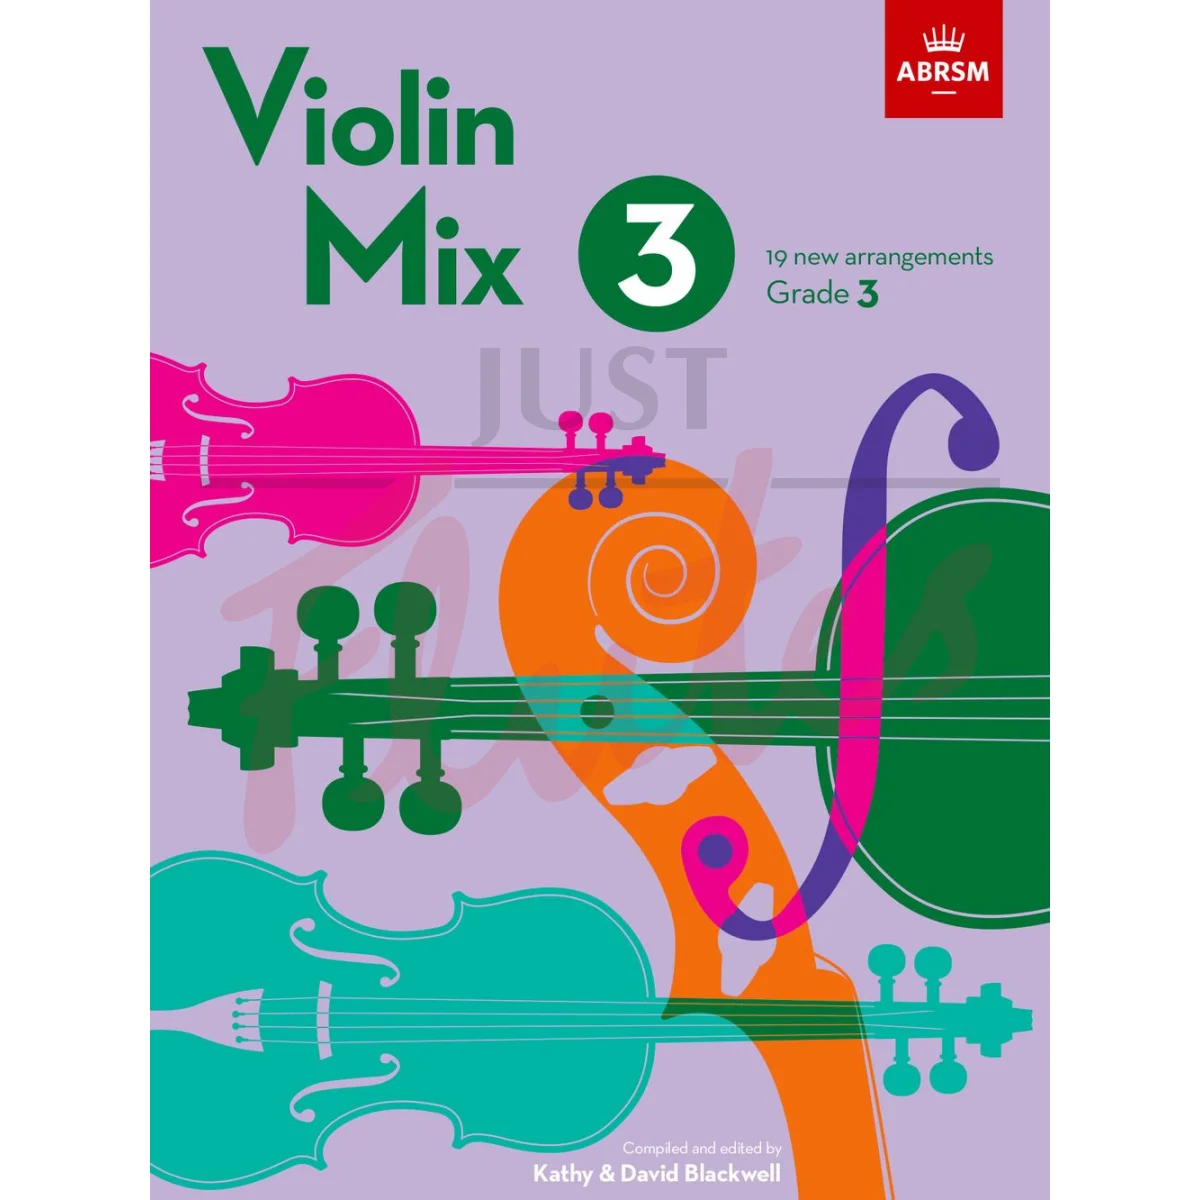 Violin Mix 3, Grade 3